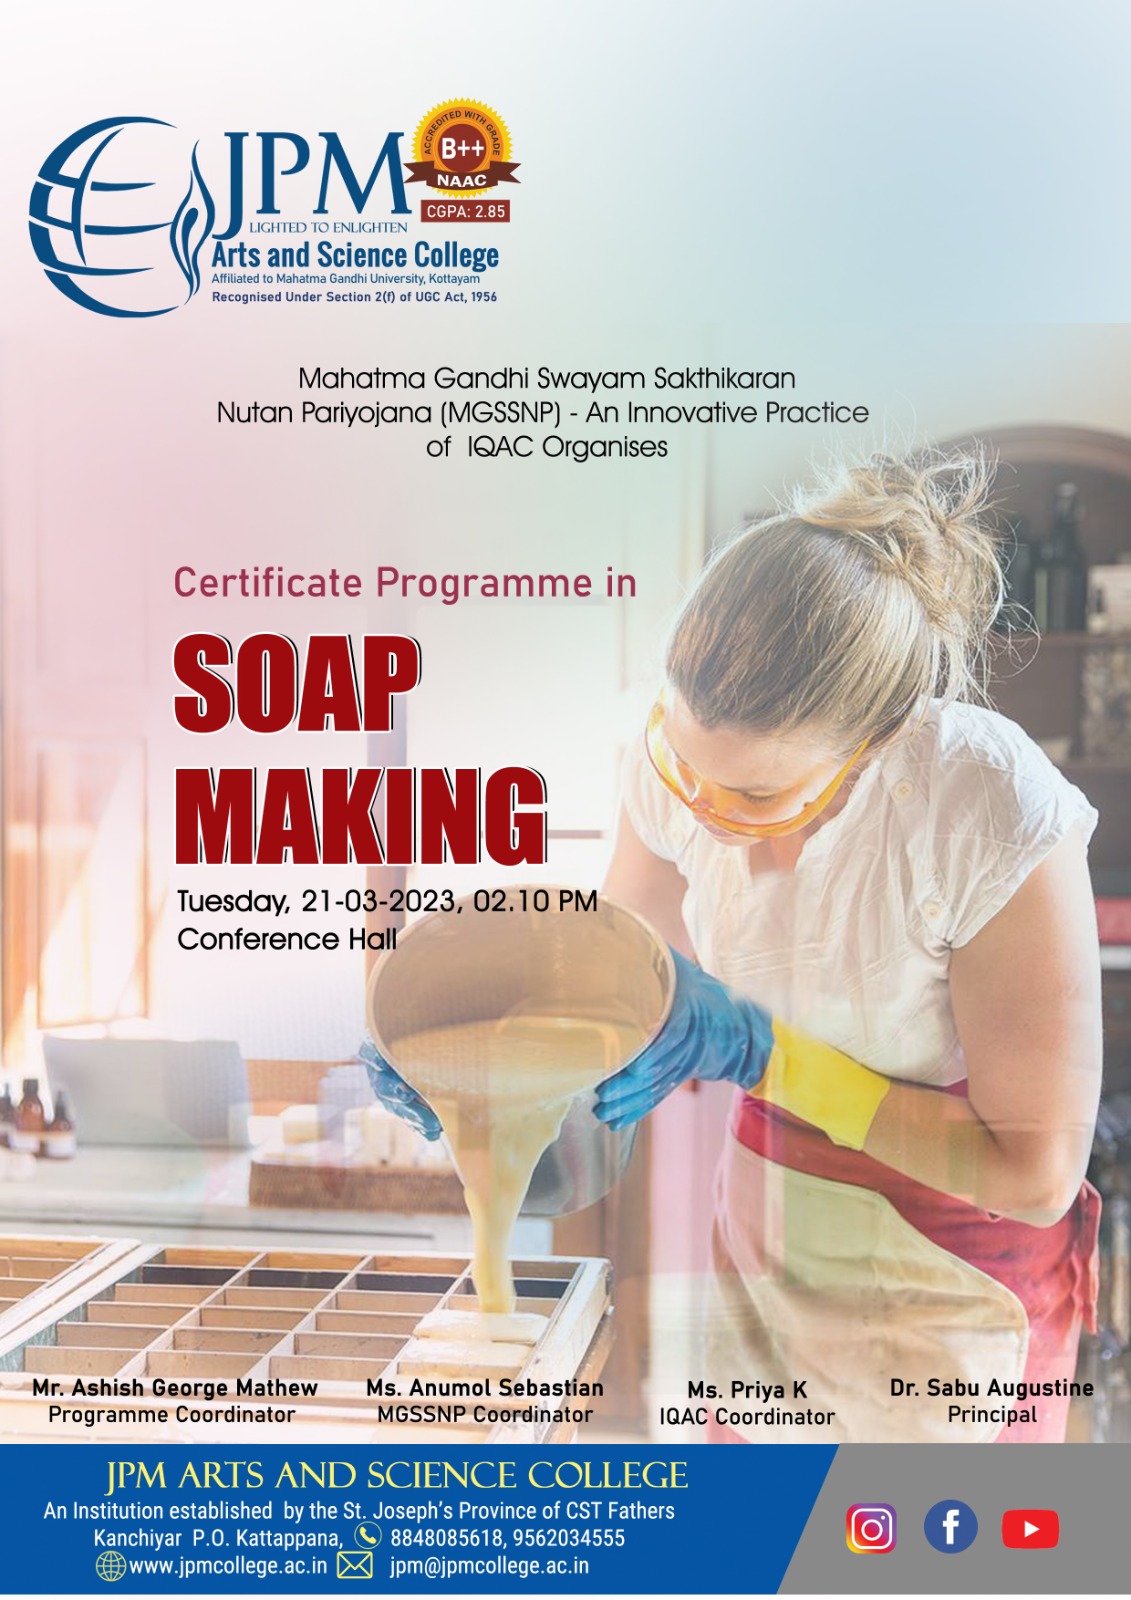 Certificate programme in Soap Making